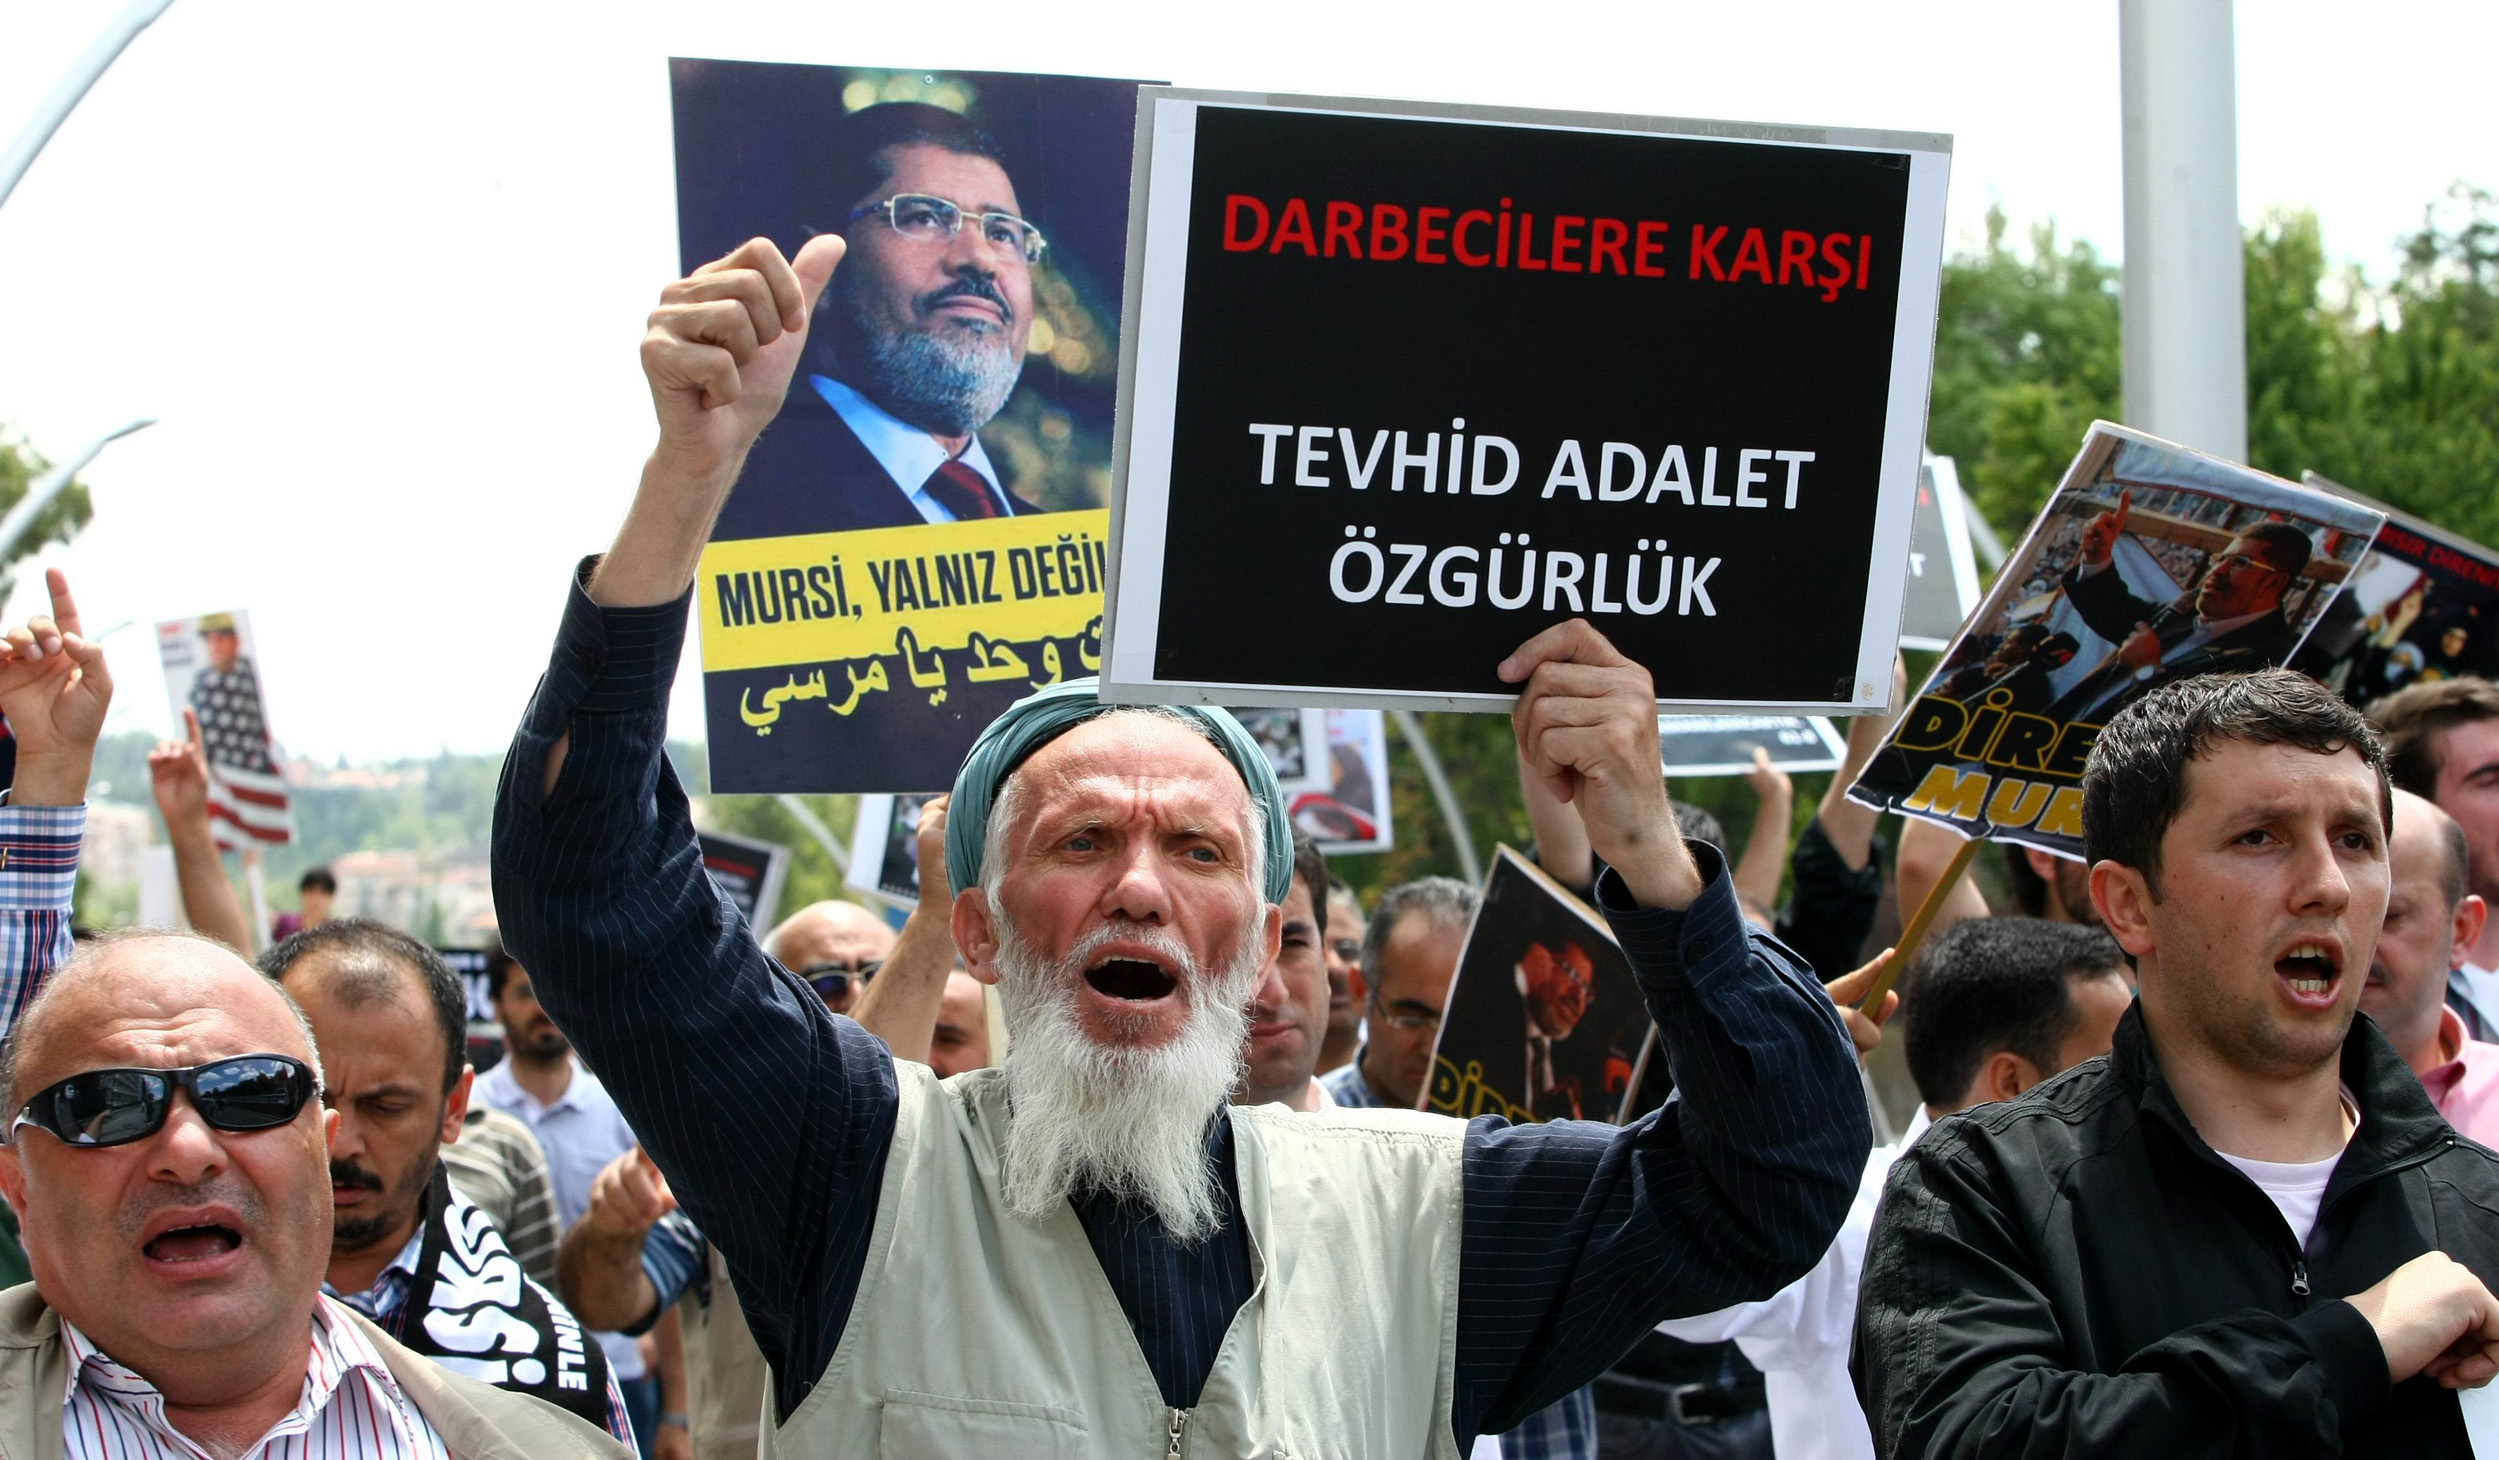 Debate: Erdoğan blundered by standing by Mursi